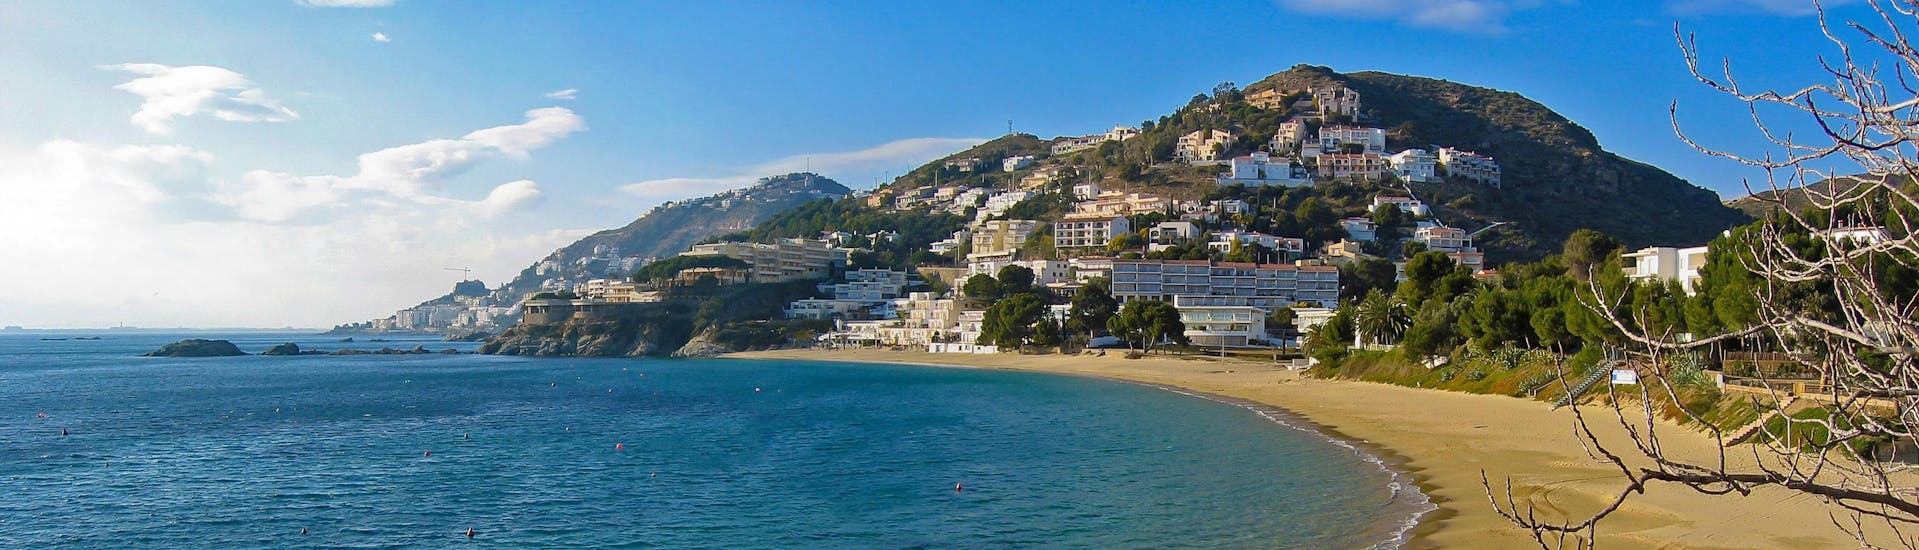 Bild der Küste von Roses, Costa Brava, einem beliebten Ziel für Bootsausflüge.